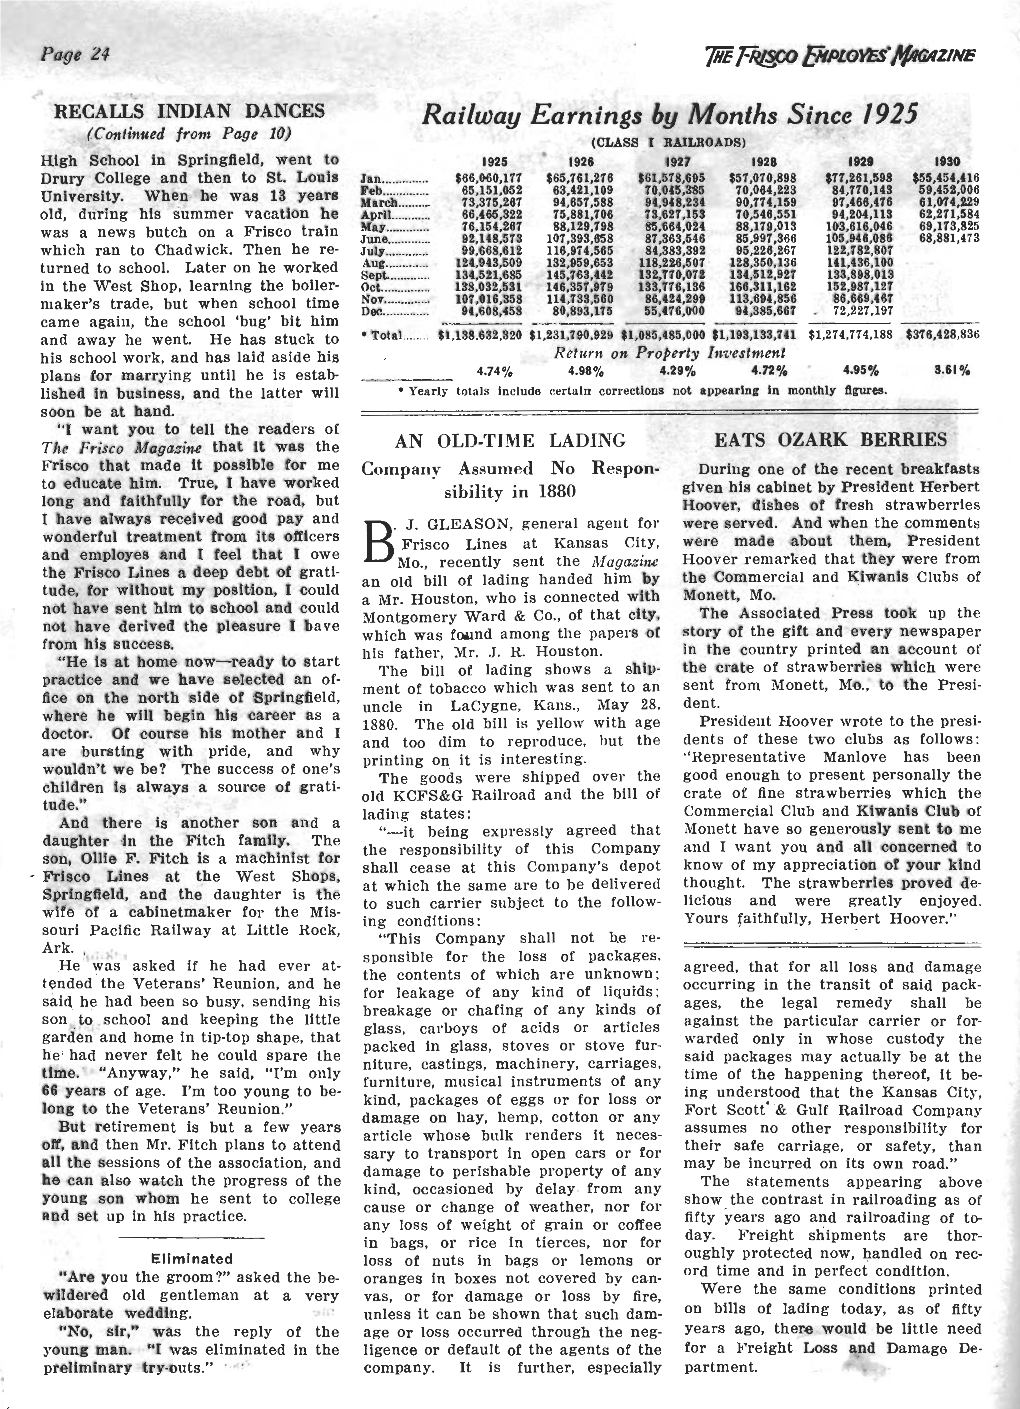 The Frisco Employes' Magazine, September 1930